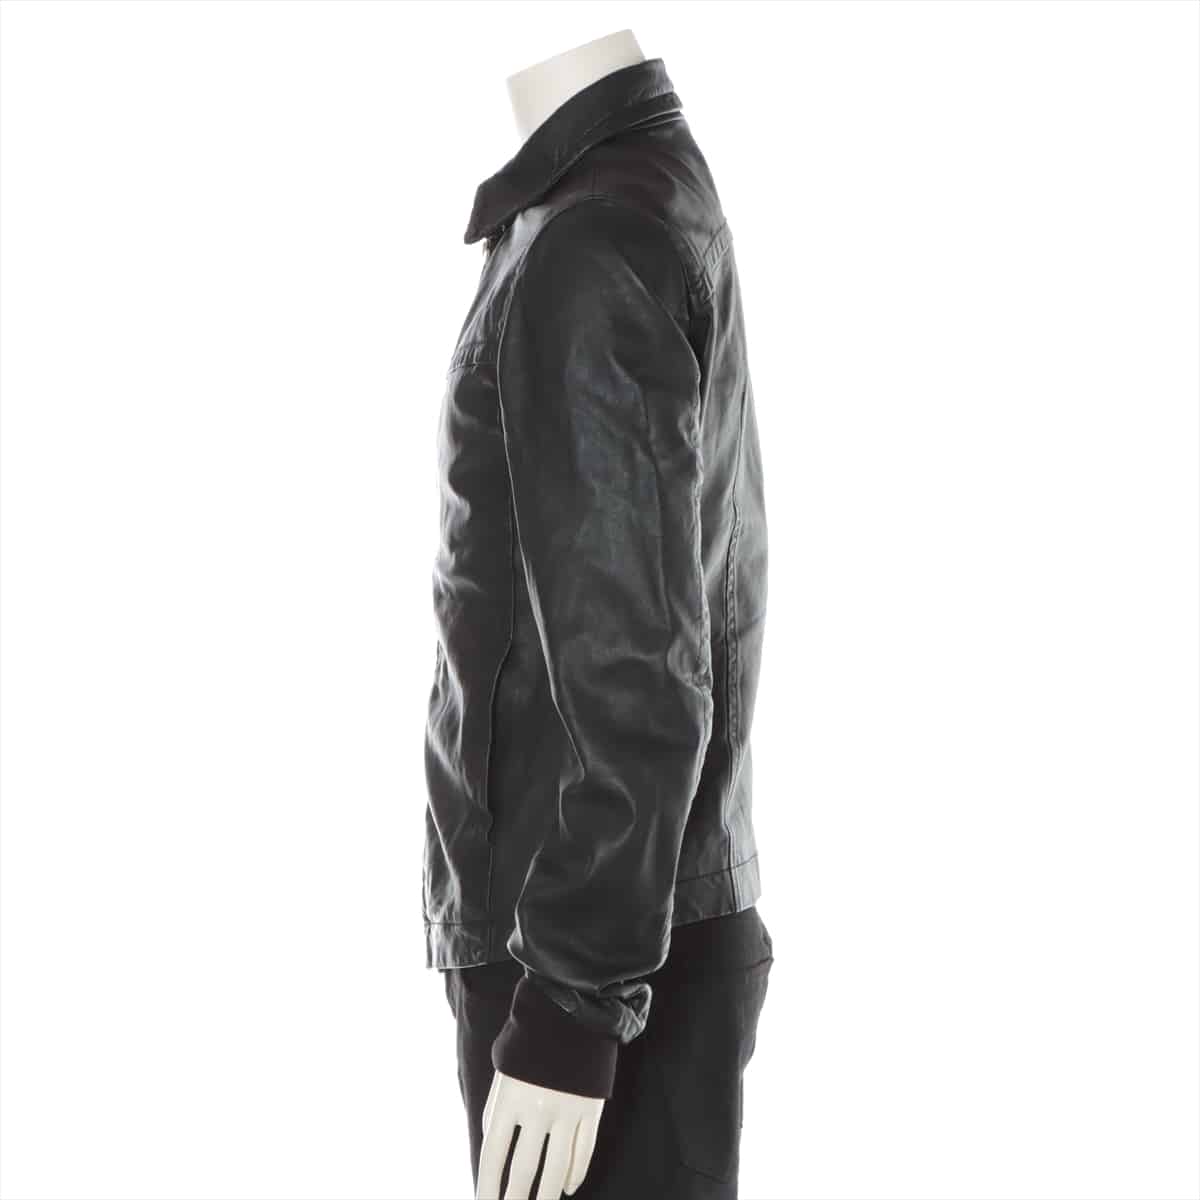 Rick Owens Lambskin Leather jacket S Men's Black